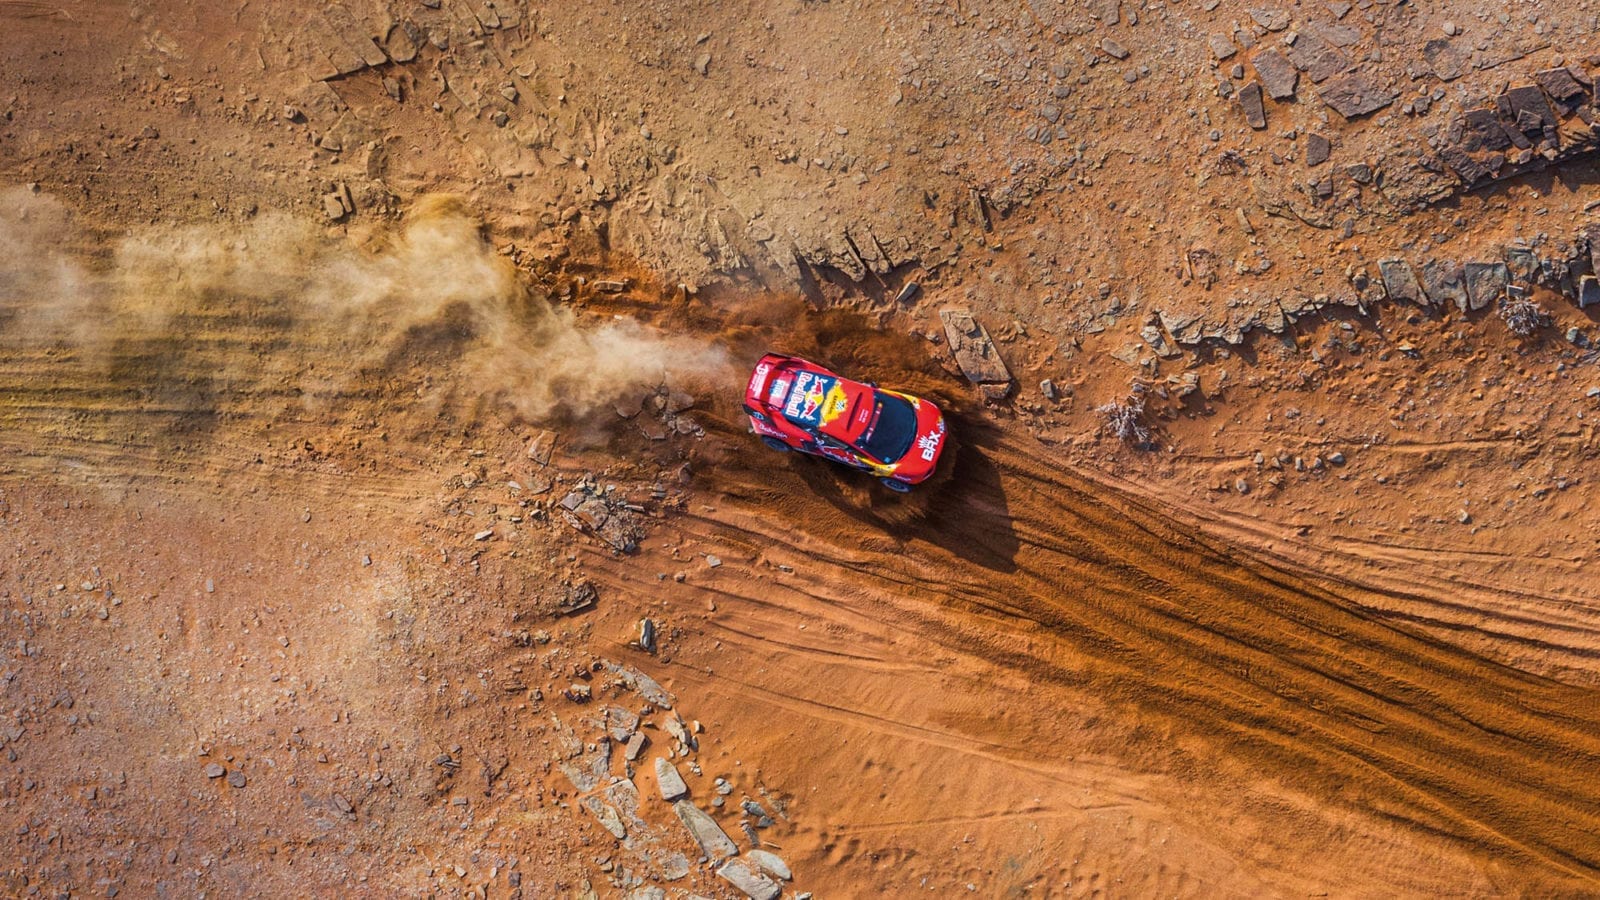 Overhead shot of BRX of Sebastien Loeb on the 2021 Dakar